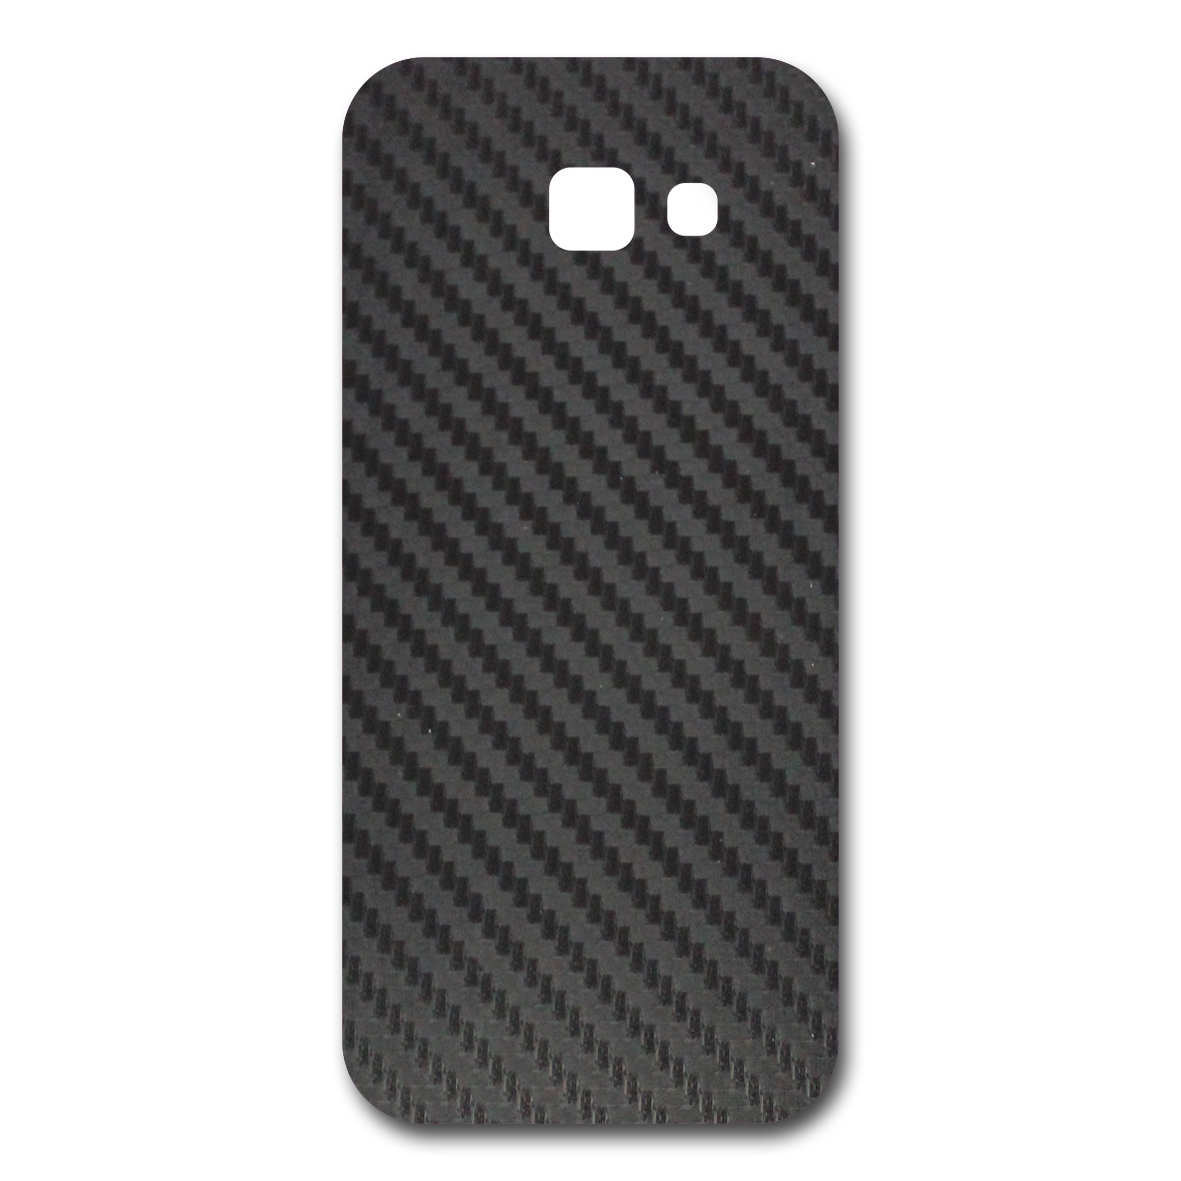 برچسب پوششی مدل Carbon-fiber مناسب برای گوشی موبایل سامسونگ galaxy A5 2017